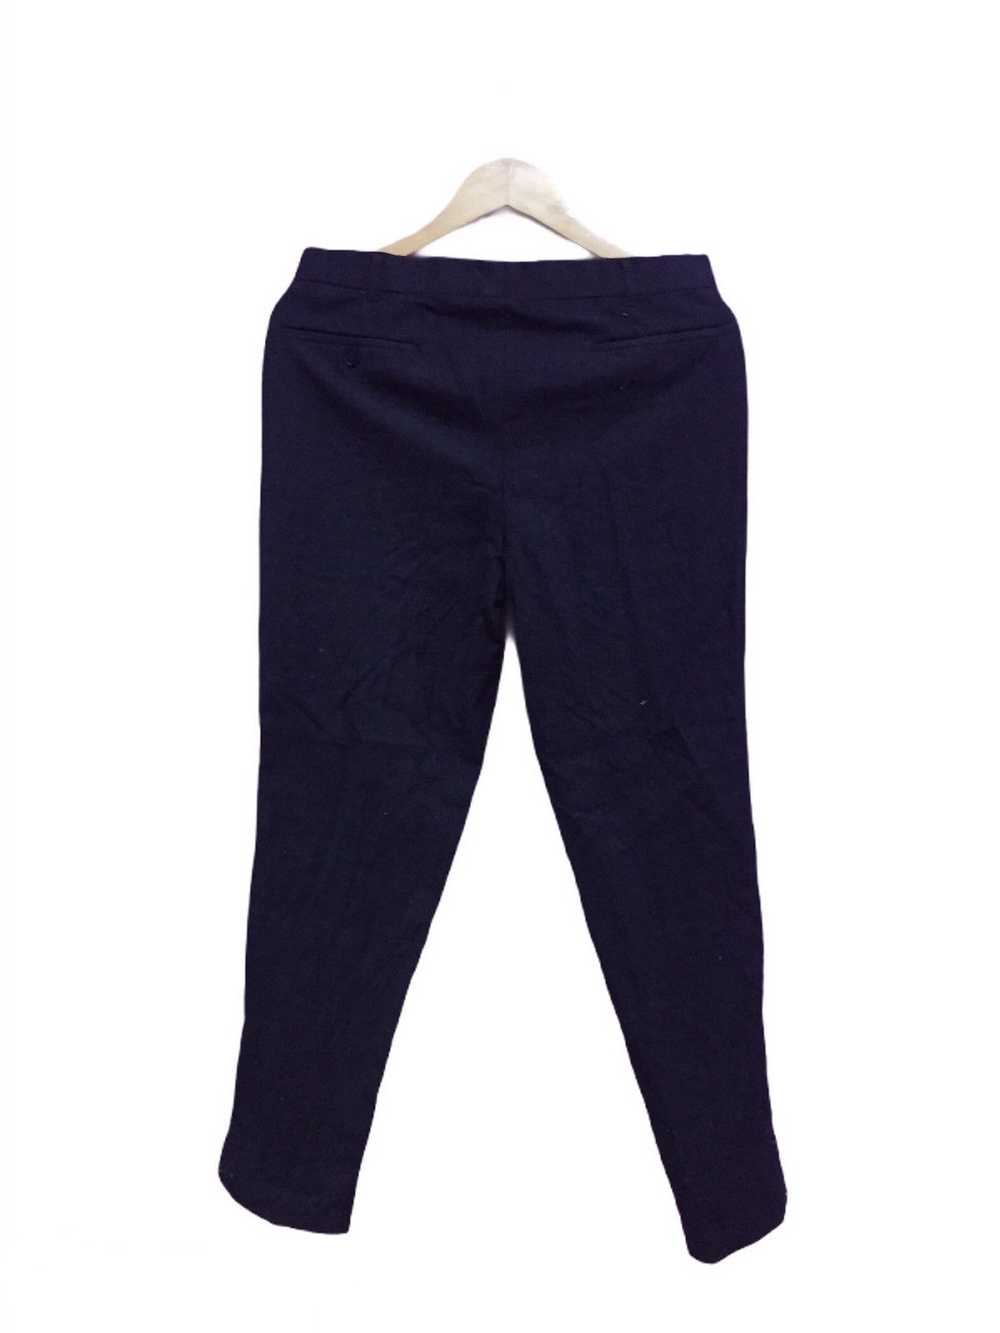 Japanese Brand Last Drop Van Jac Pants - image 2